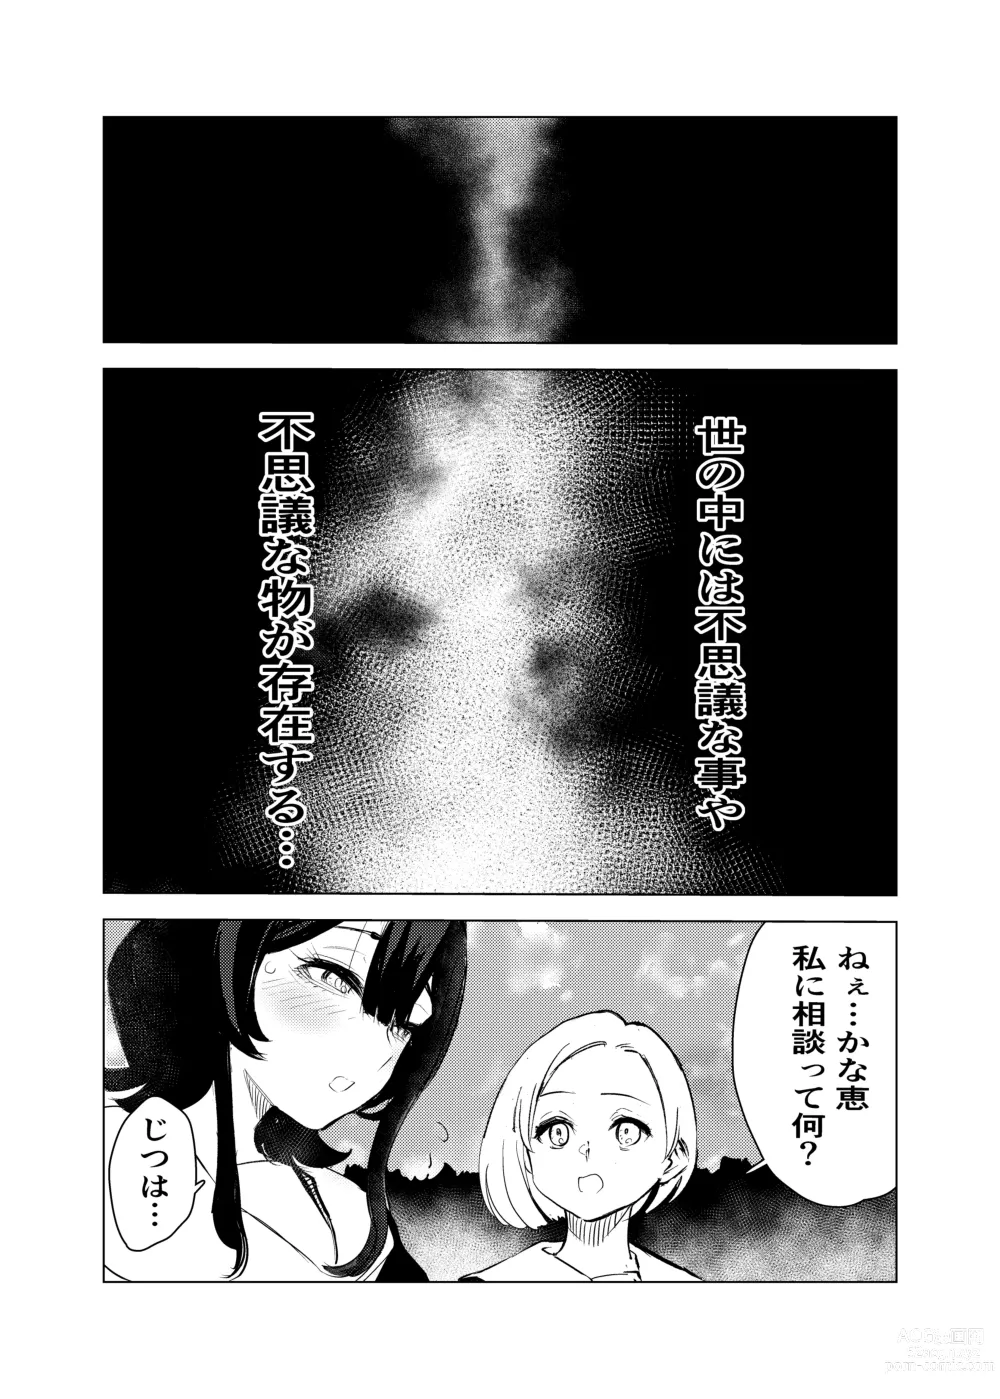 Page 2 of doujinshi Neko no Ongaeshi